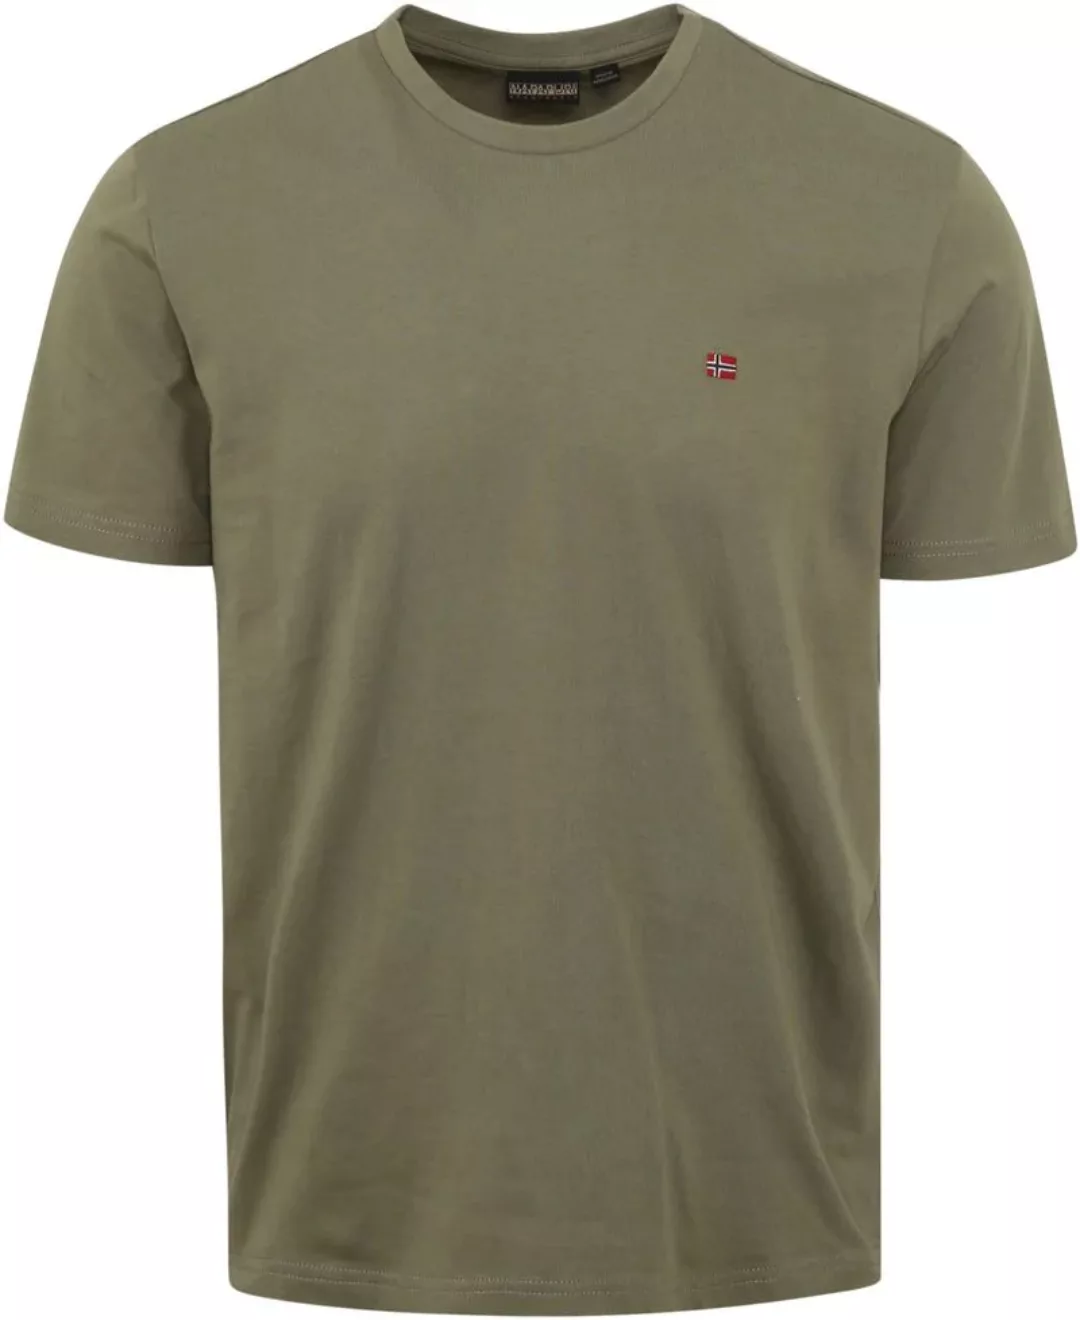 Napapijri Salis T-shirt Grün - Größe XL günstig online kaufen